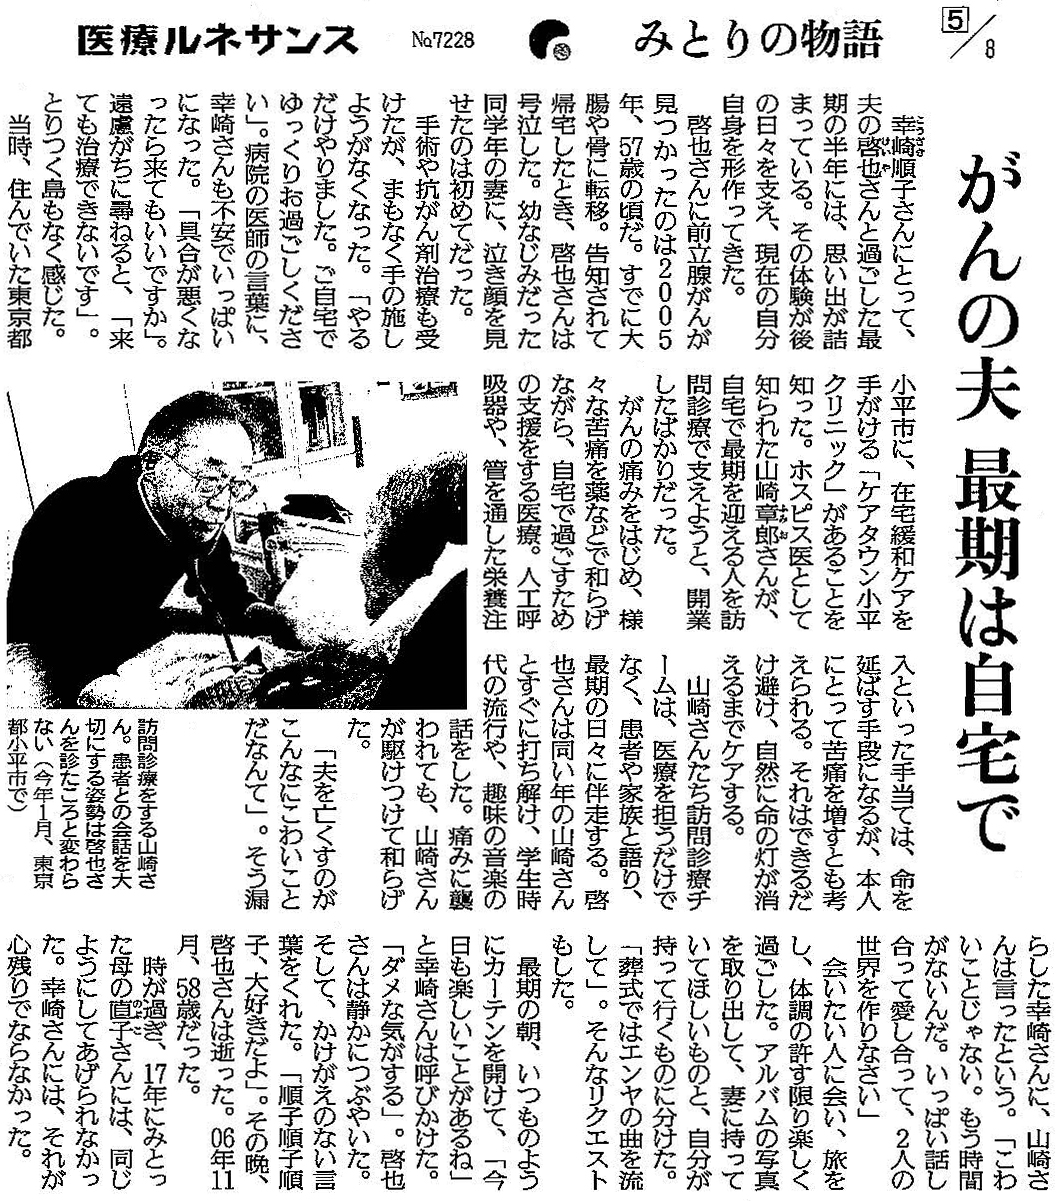 読売新聞 2020年2月25日掲載記事